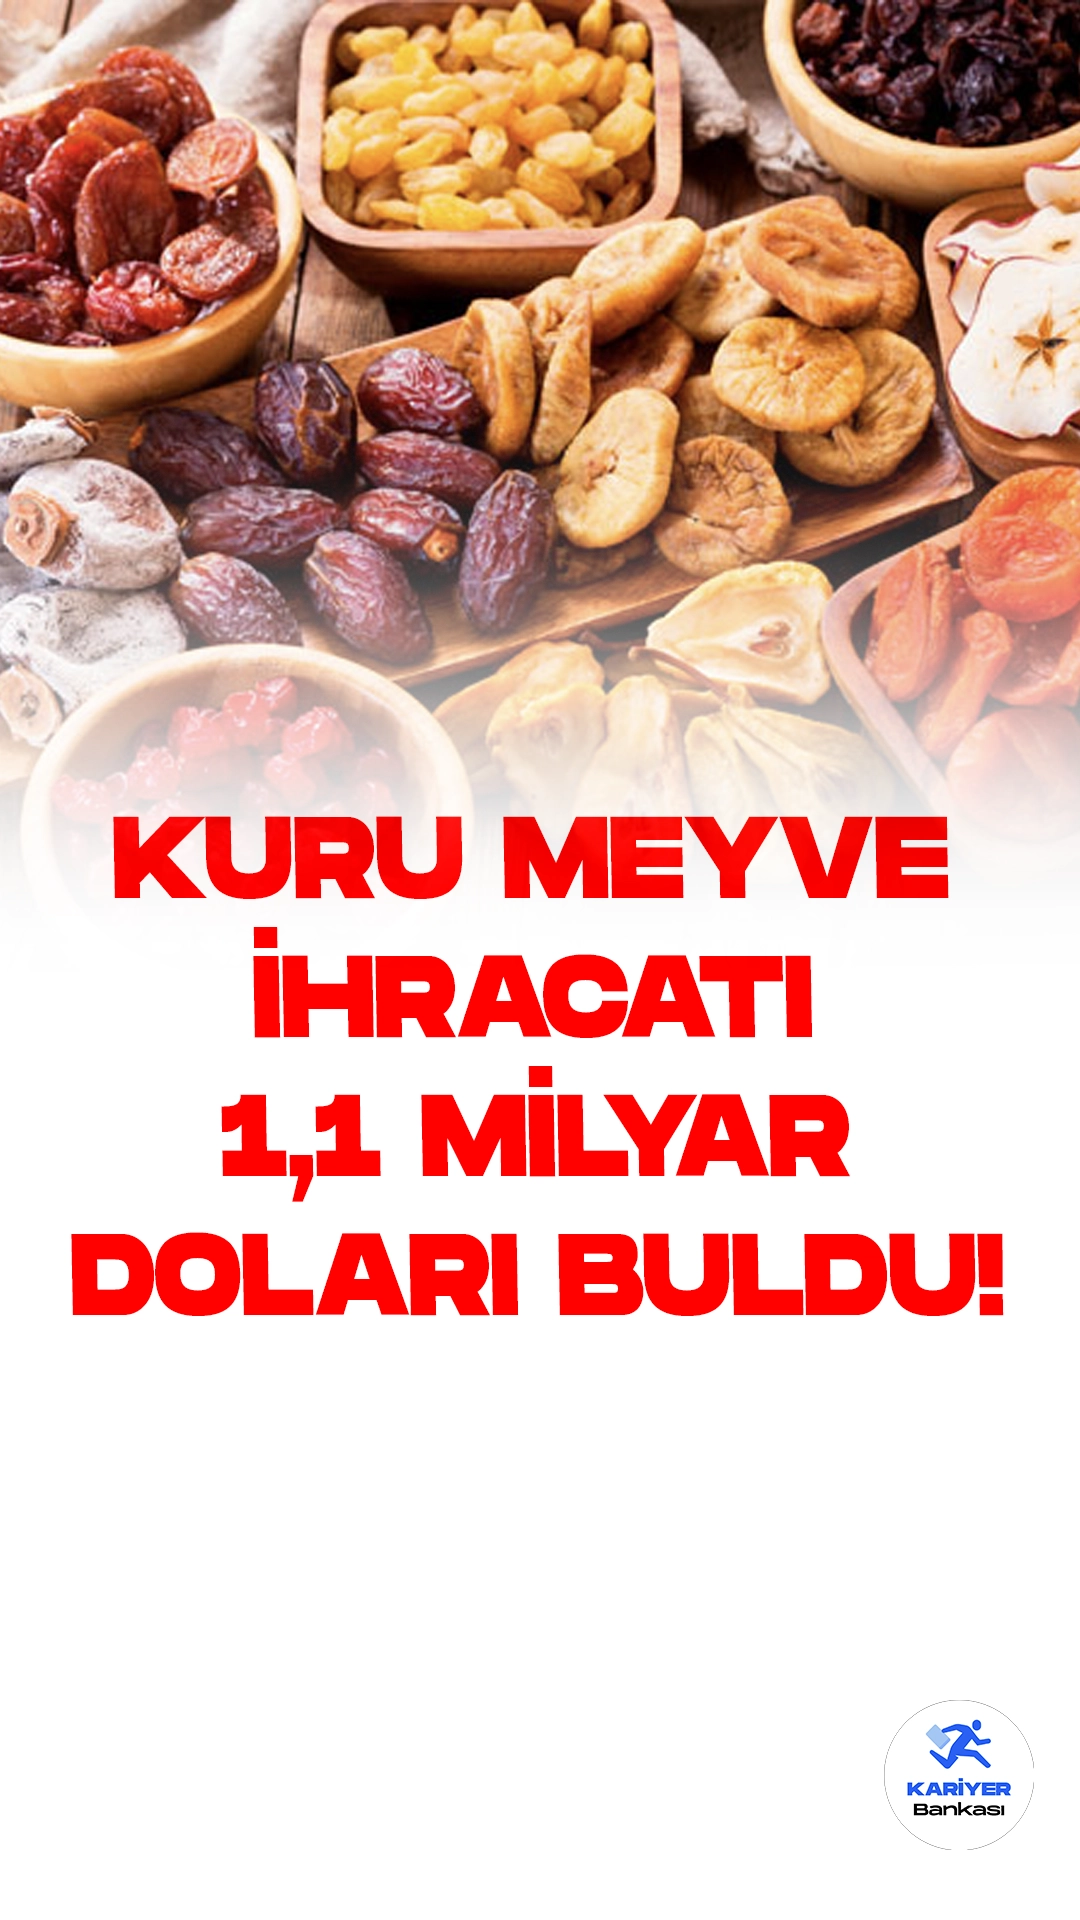 Kuru Meyve İhracatında Rekor: 1 Milyar 103 Milyon Dolarlık Başarı.Türkiye'nin kuru meyve ve mamulleri ihracatı, 1 milyar 103 milyon dolar değerinde gerçekleşerek büyük bir başarıya imza attı. Ege Kuru Meyve ve Mamulleri İhracatçıları Birliği Başkanı Mehmet Ali Işık, yaptığı açıklamada, Türkiye'nin, Dünya Sağlık Örgütü tarafından sağlıklı gıda ürünleri listesine alınan kuru incir, kuru üzüm ve kuru kayısıda dünyada açık ara lider konumunda bulunduğunu vurguladı.